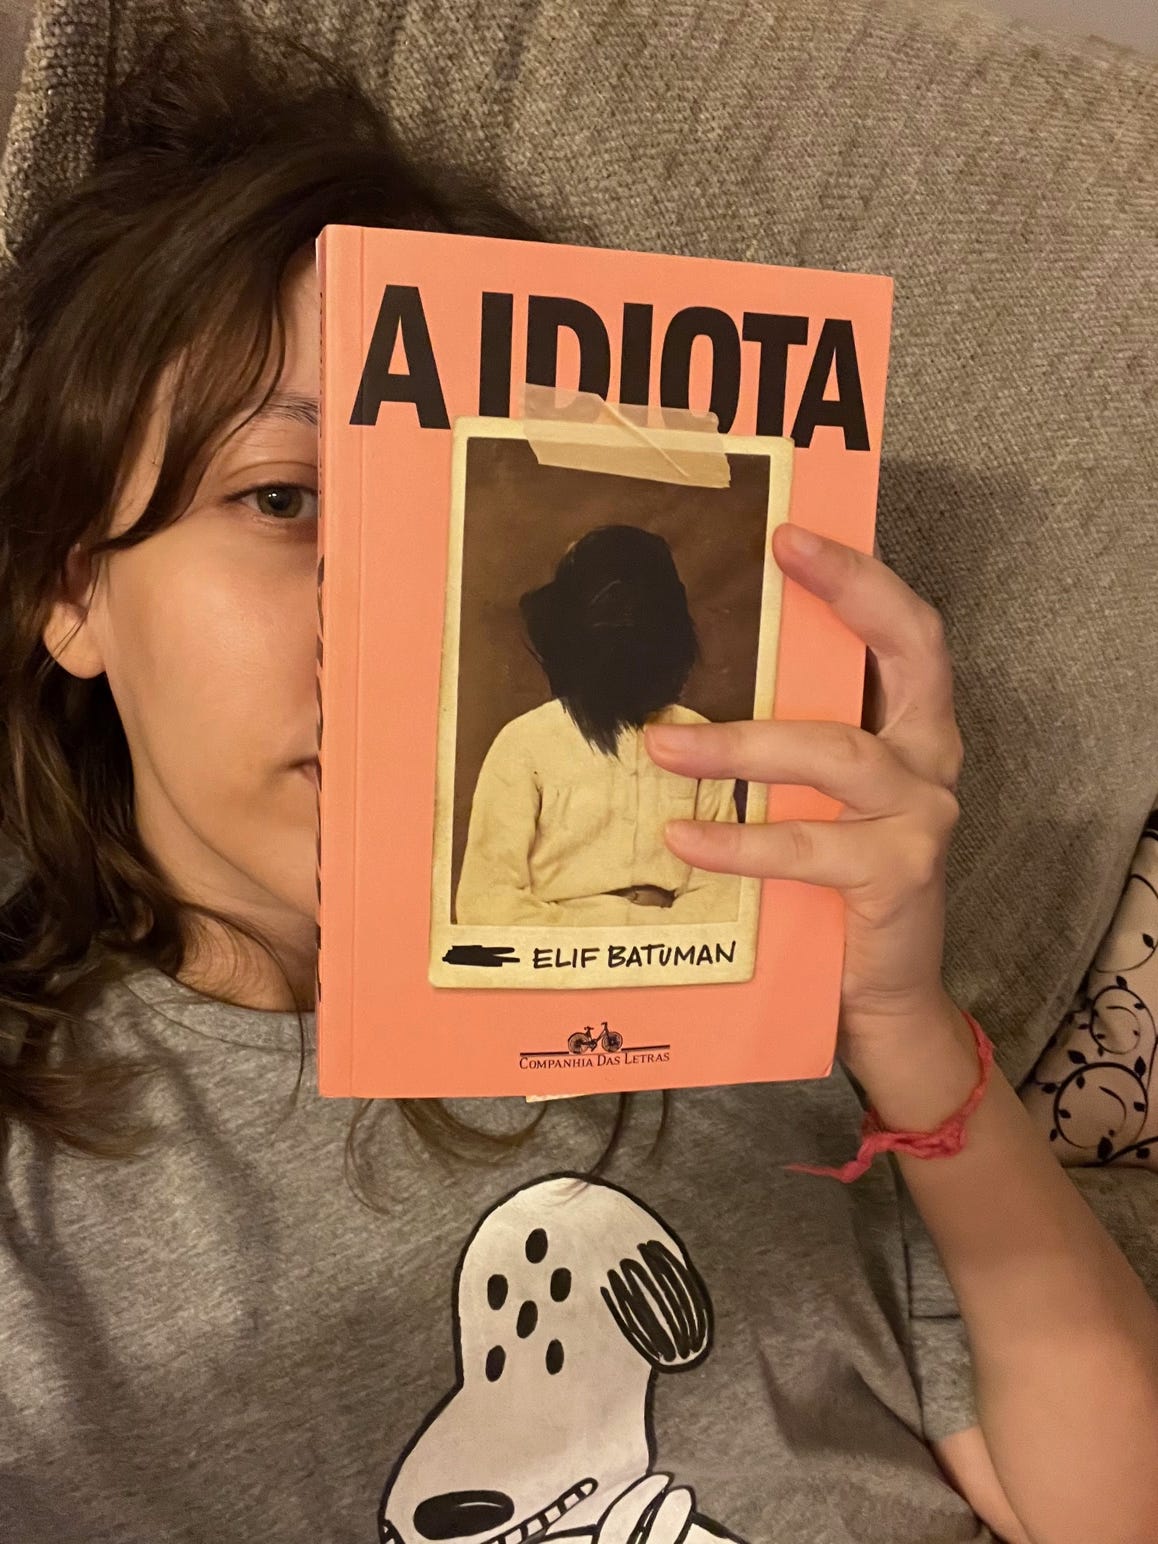 Selfie em que estou segurando a capa do livro no rosto, tampando a metade da face. Estou usando uma camiseta do Snoopy alienígena.